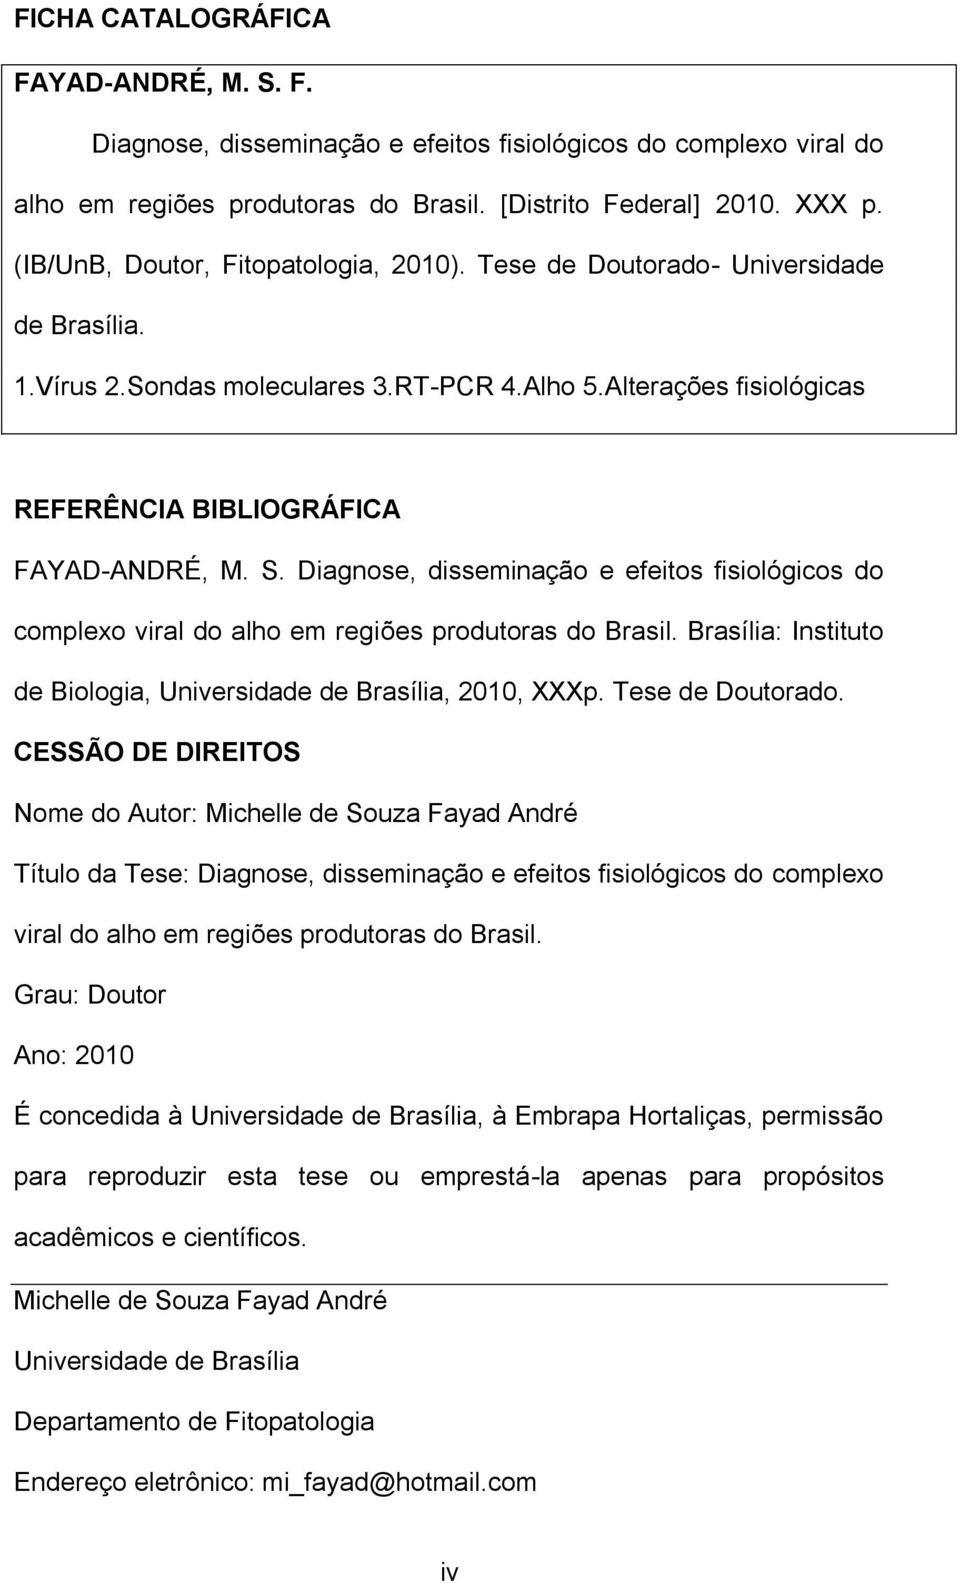 Diagnose, disseminação e efeitos fisiológicos do complexo viral do alho em regiões produtoras do Brasil. Brasília: Instituto de Biologia, Universidade de Brasília, 2010, XXXp. Tese de Doutorado.